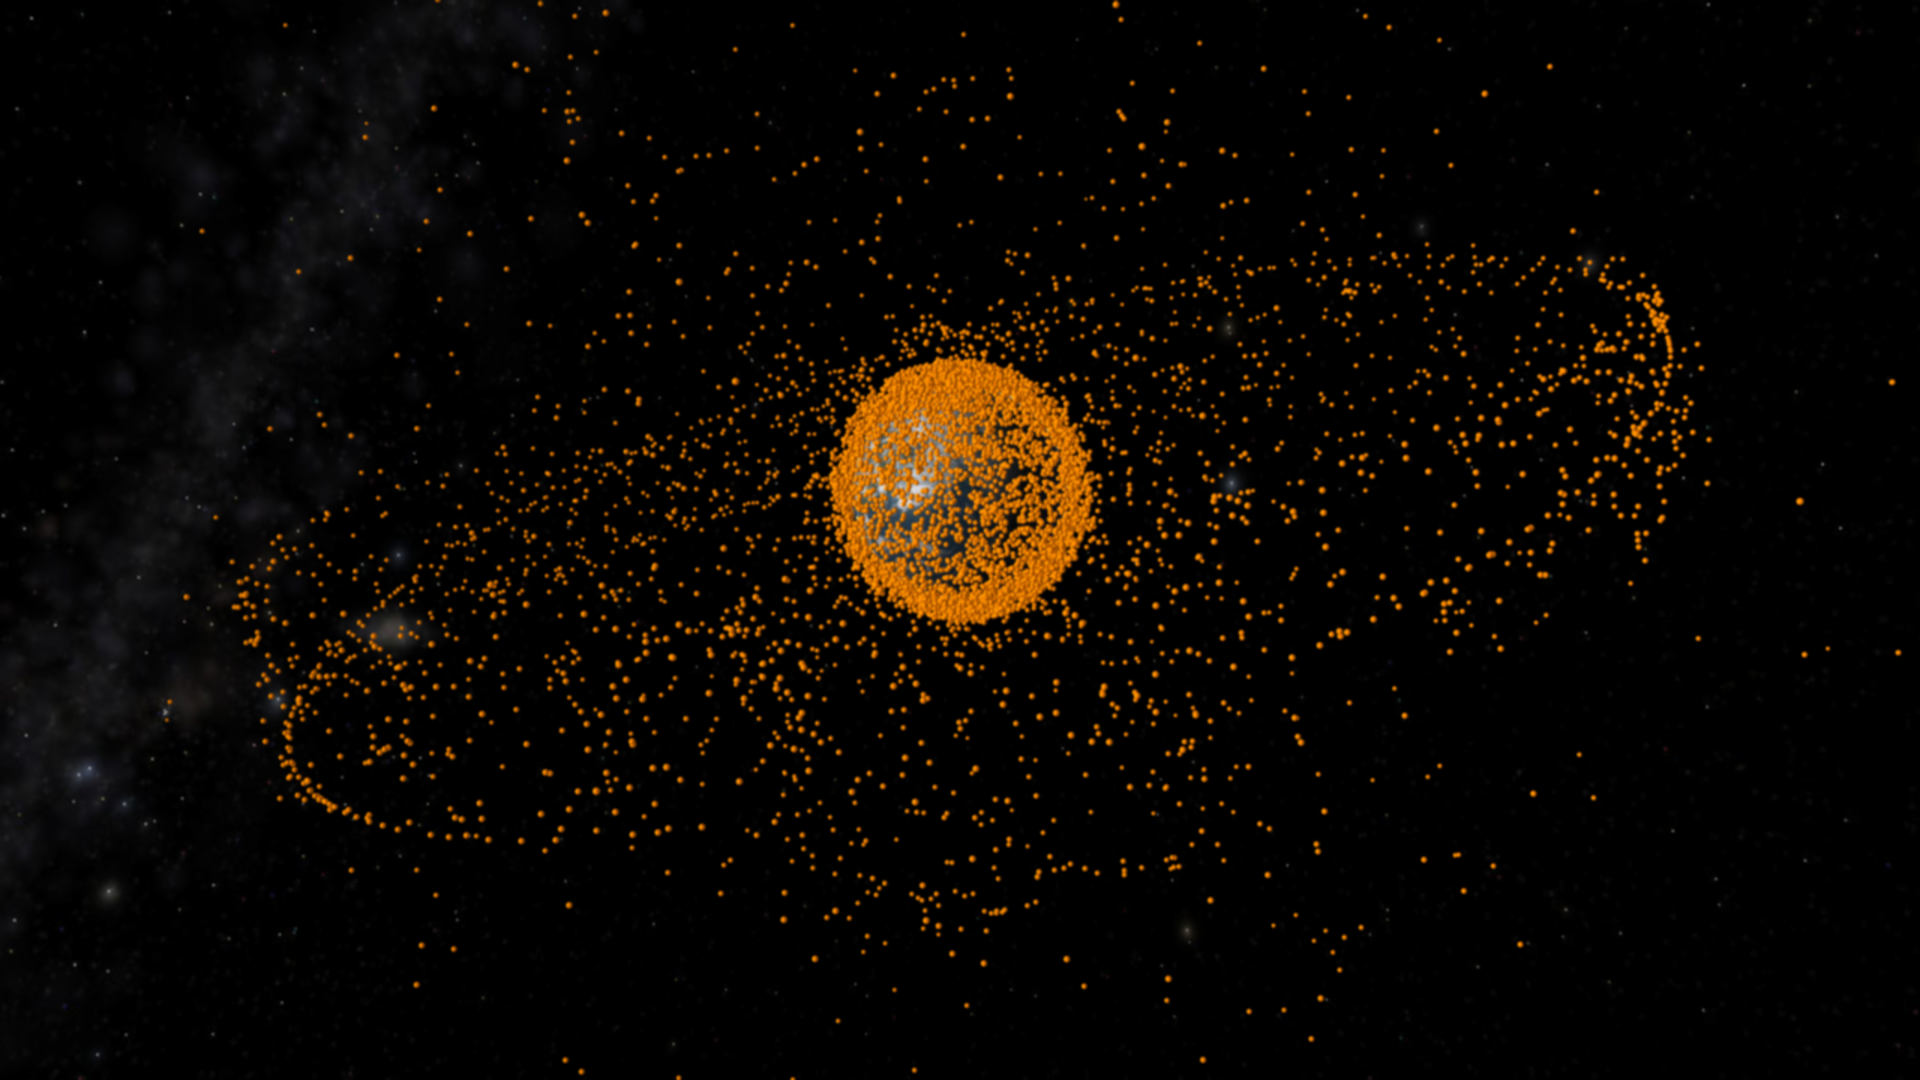 Space debris objects in orbit